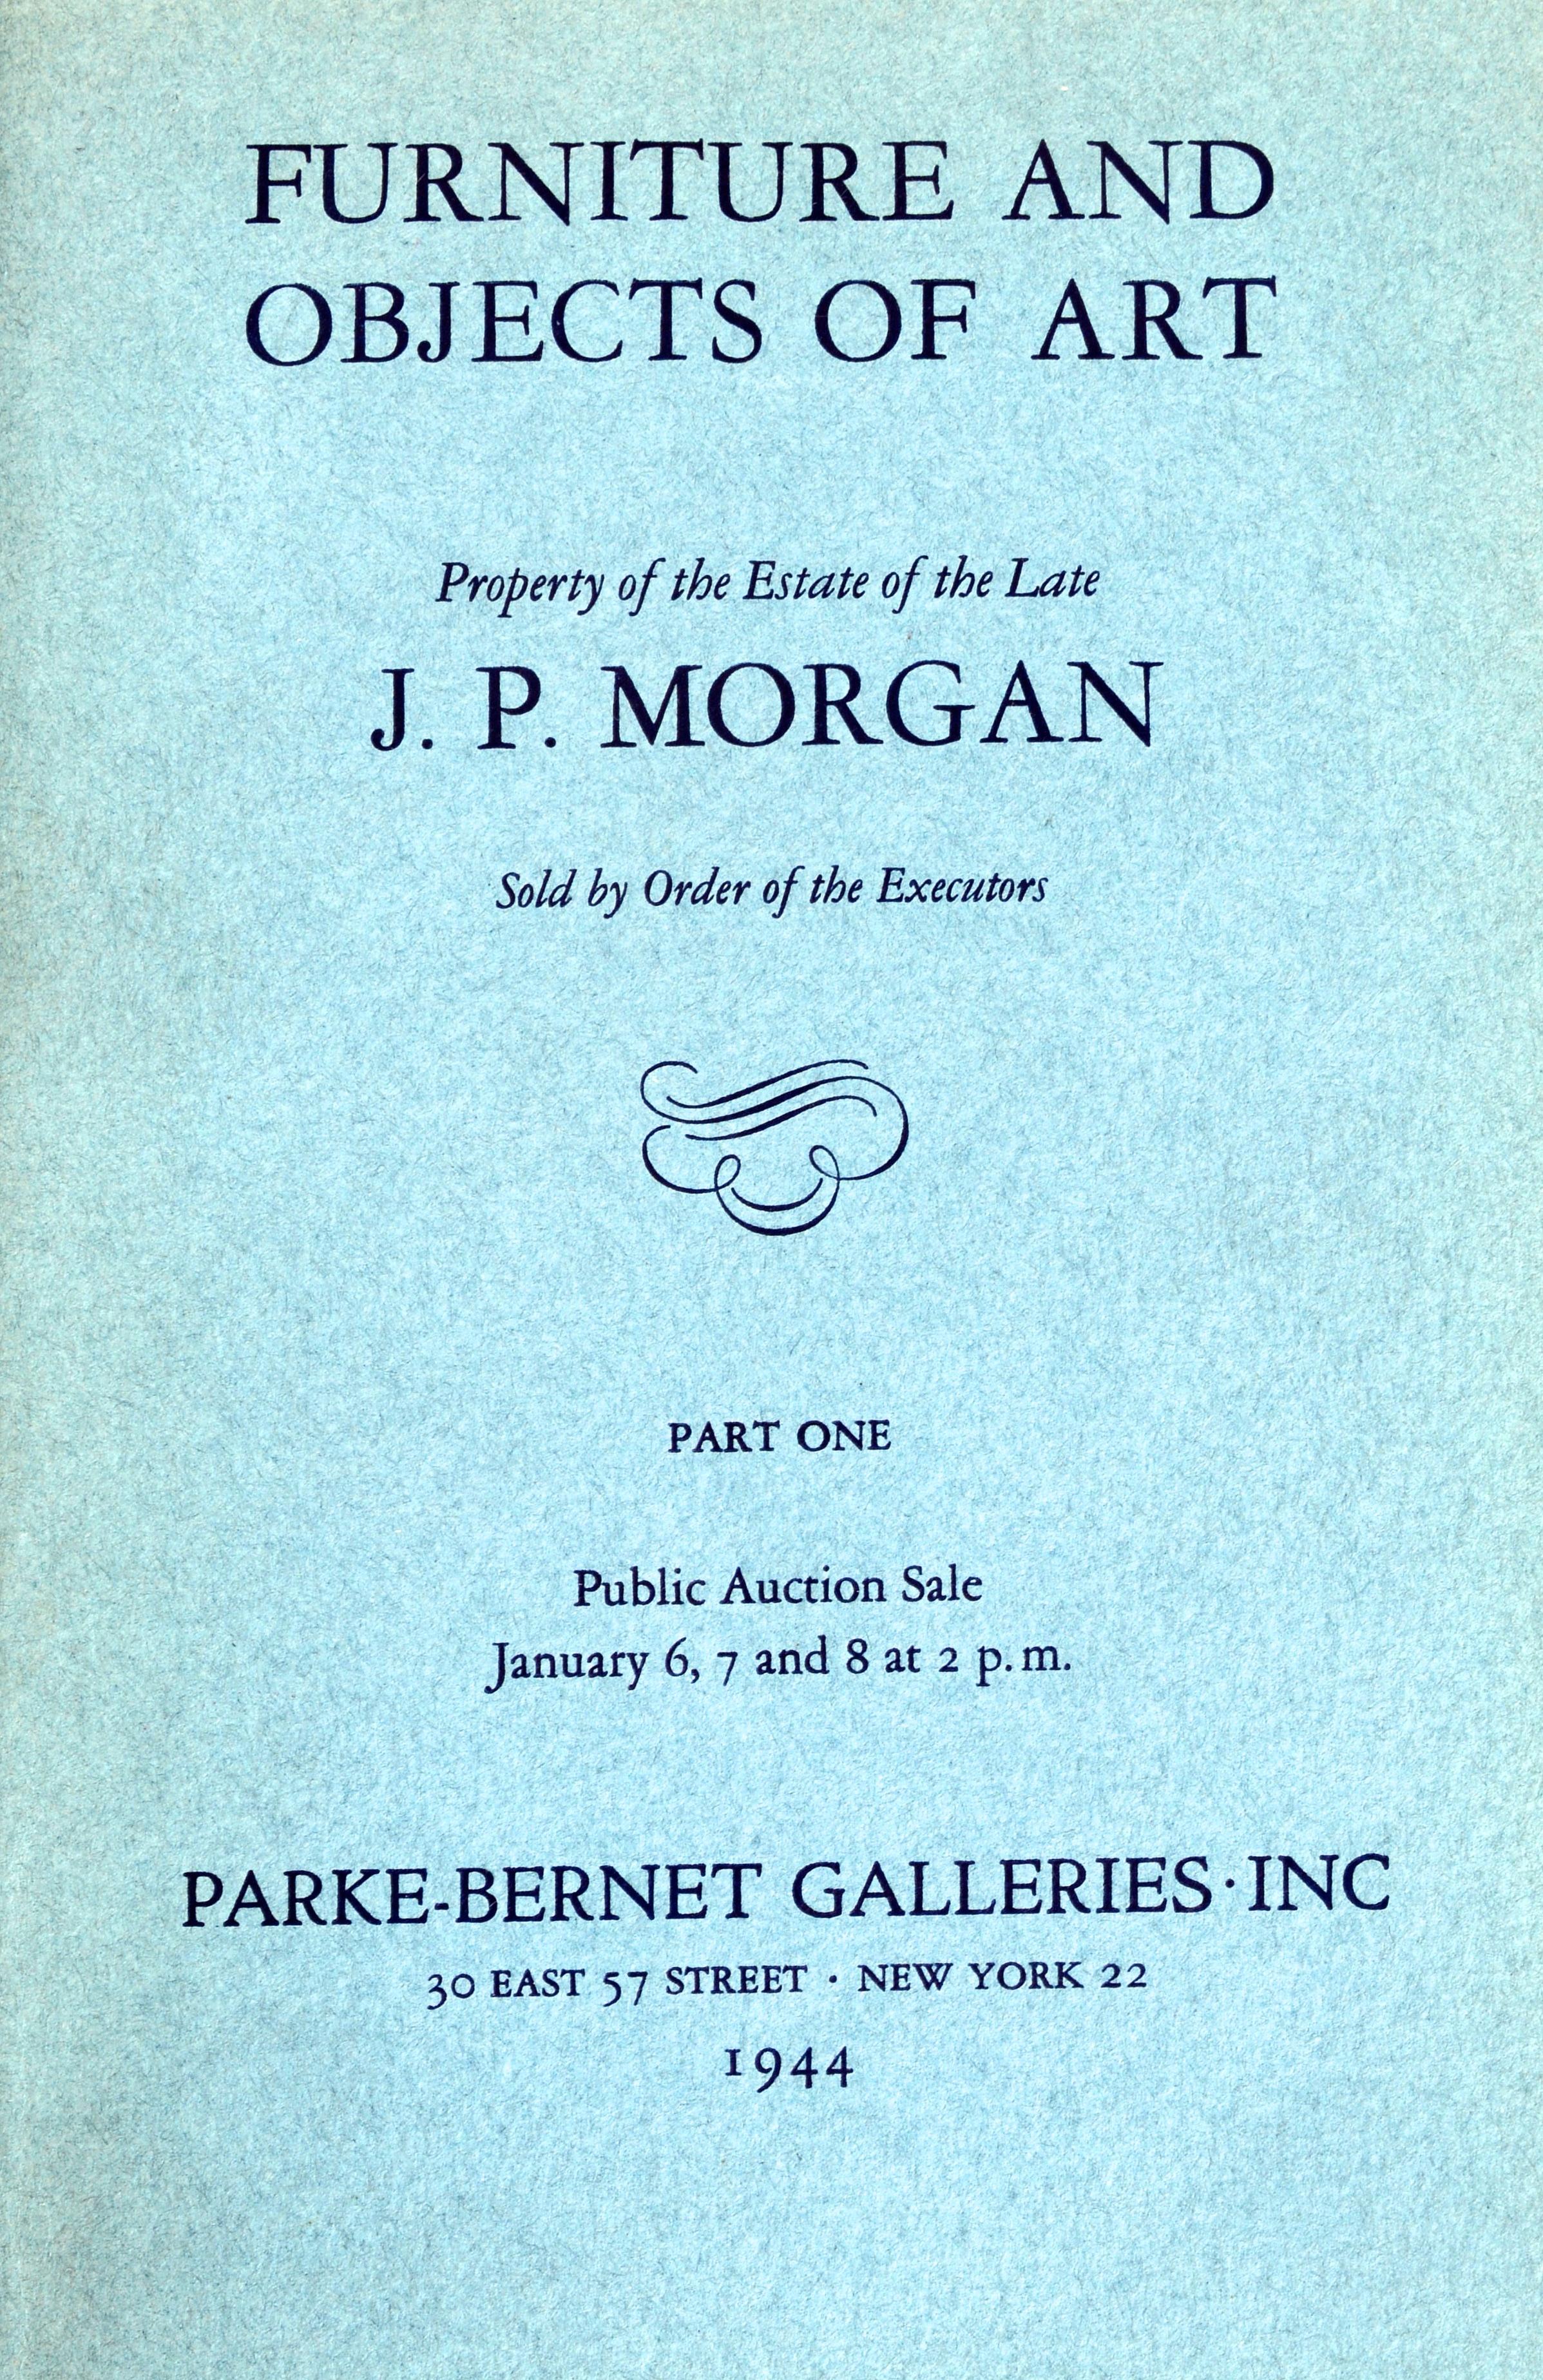 Propriété de la succession de feu J.P. Morgan, Les 4 catalogues de la célèbre vente de la succession de J.P. Morgan en 1944 sont reliés dans un livre à couverture rigide. Les lots du catalogue ont des prix de vente notés au crayon. Vente n° 1 :